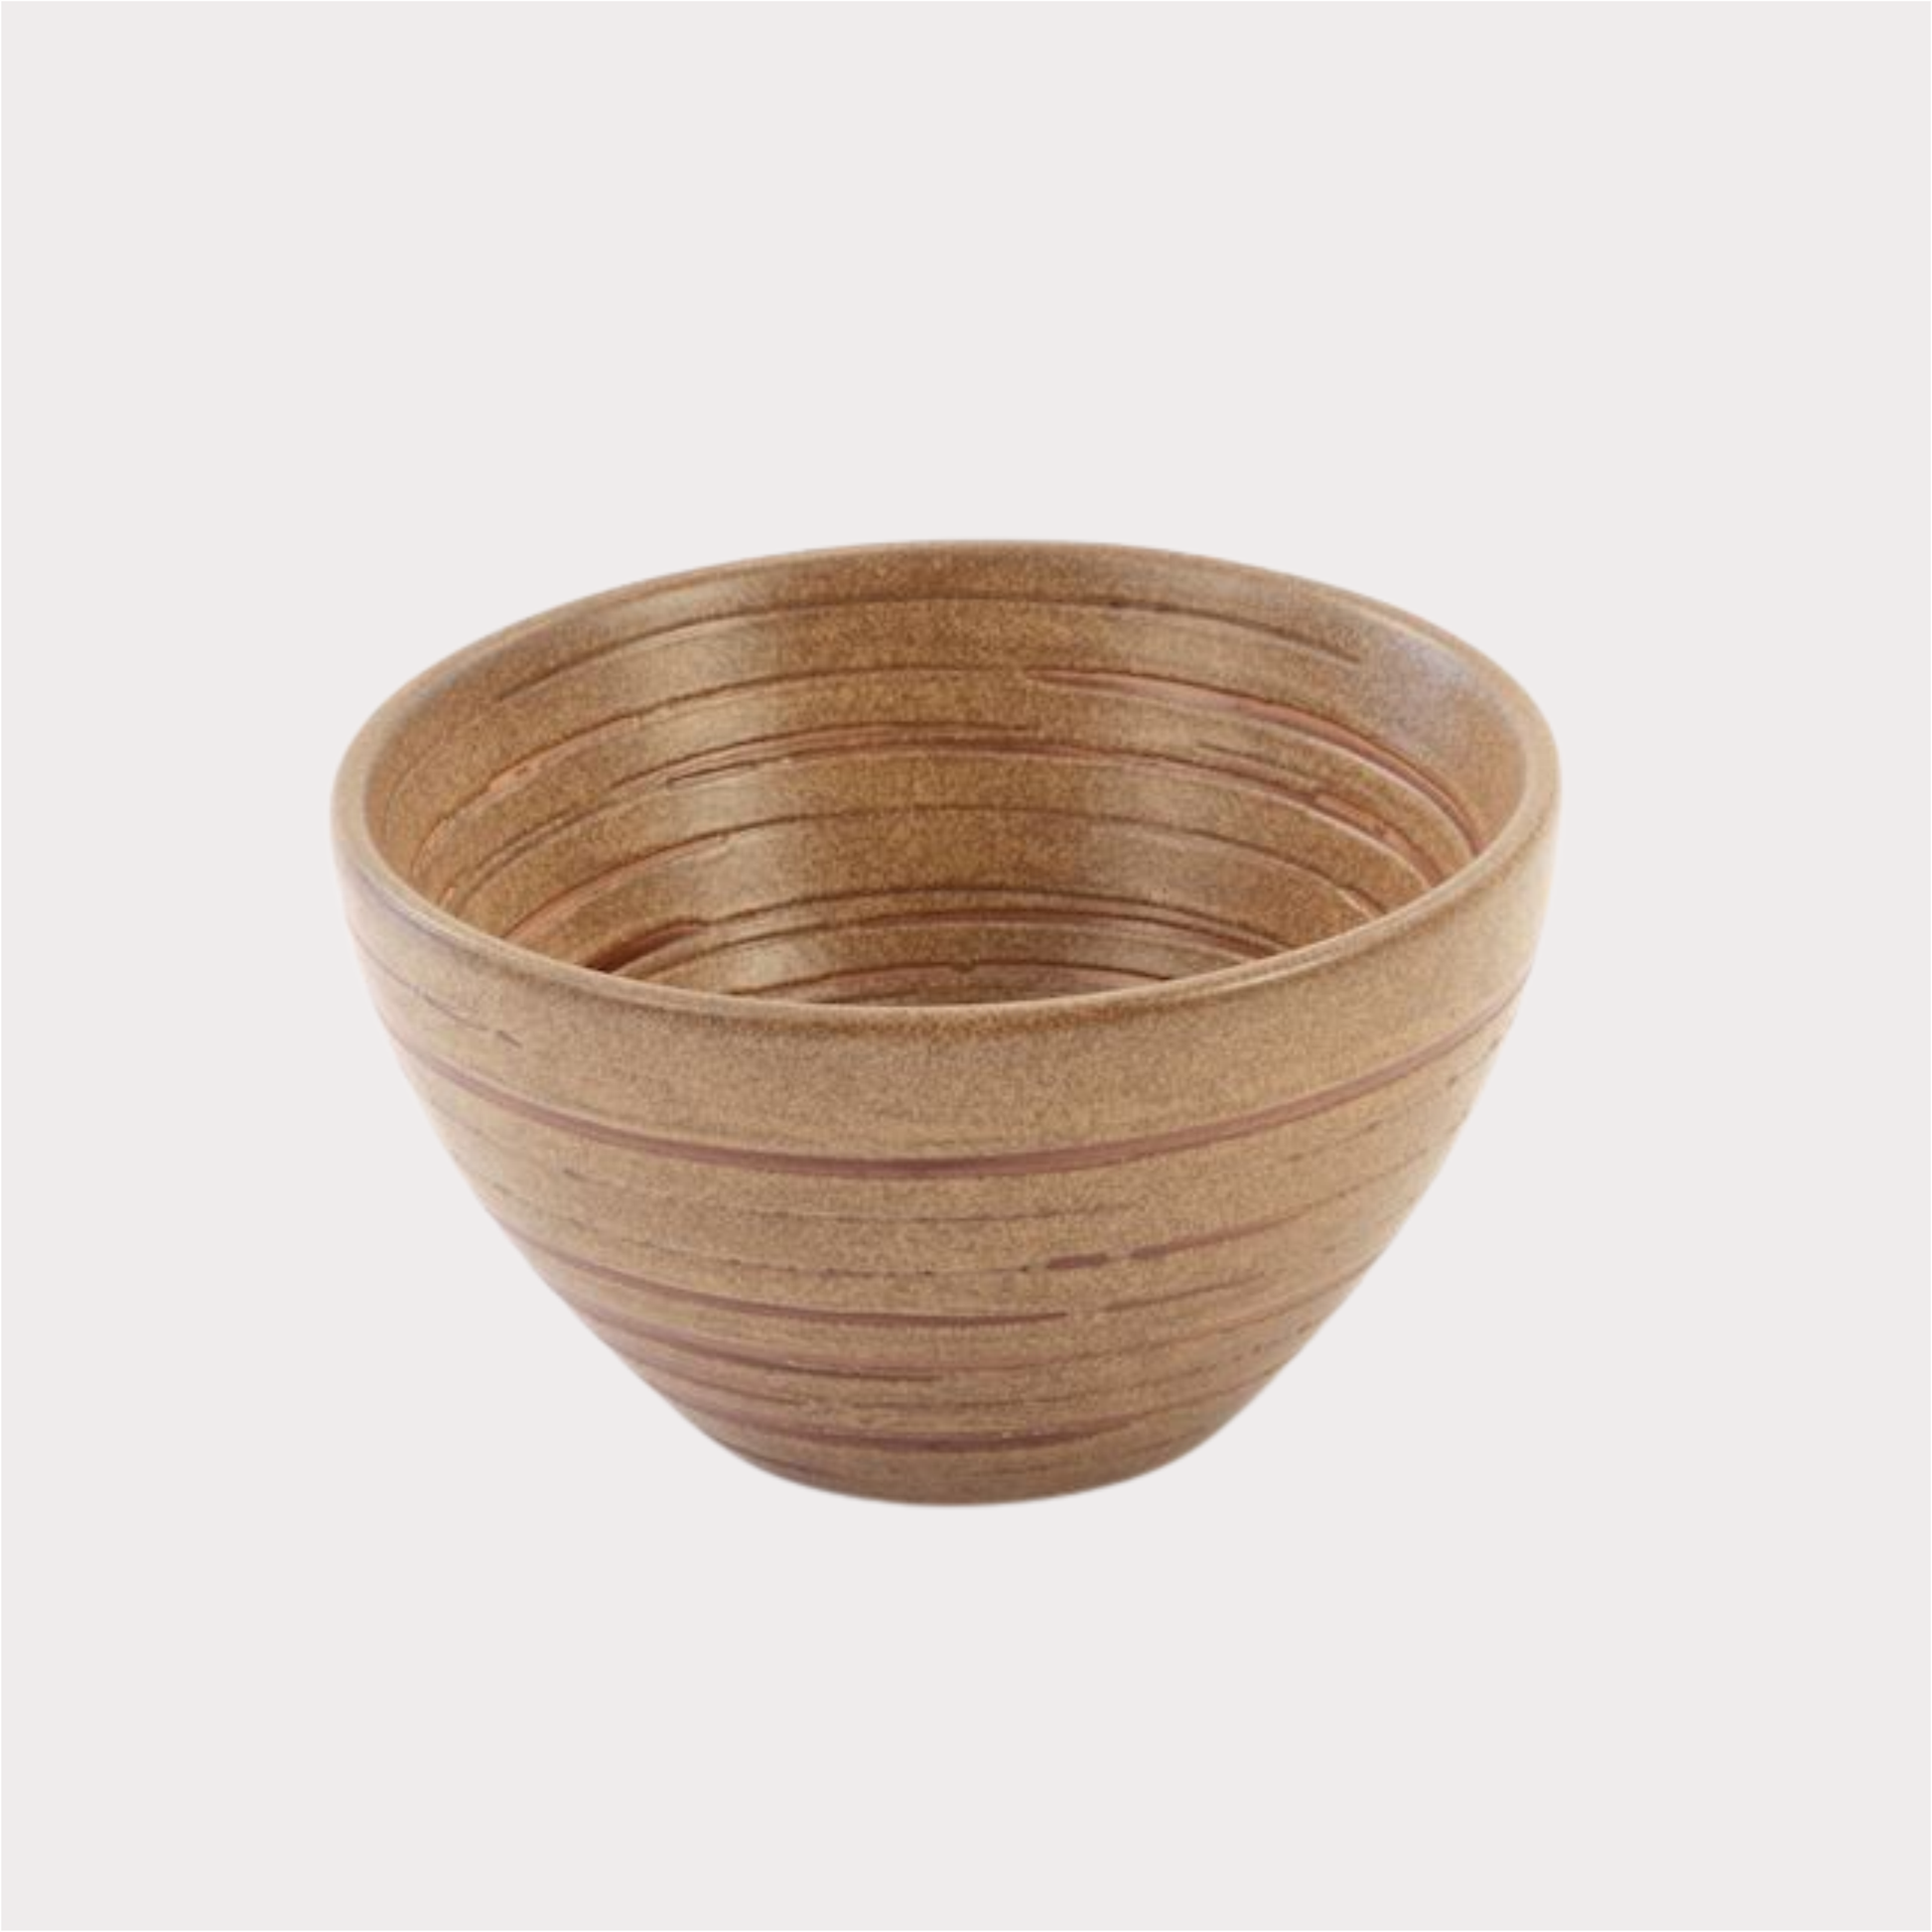 Cup "Fung" Keramik 0,2 l 1 Stück ChaCult